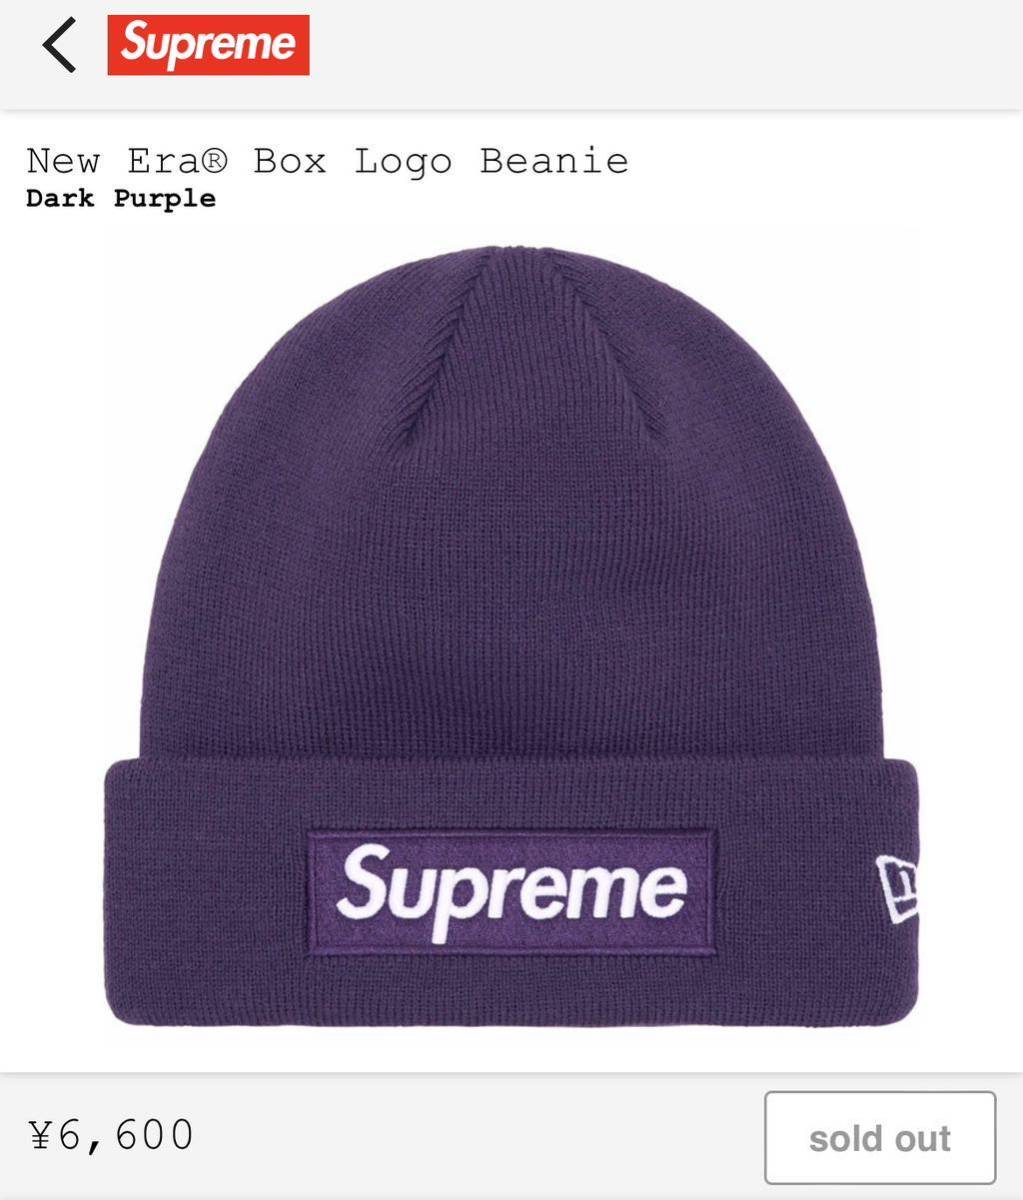 Supreme New Era Box Logo Beanie Dark Purple cap ビーニー ニット帽